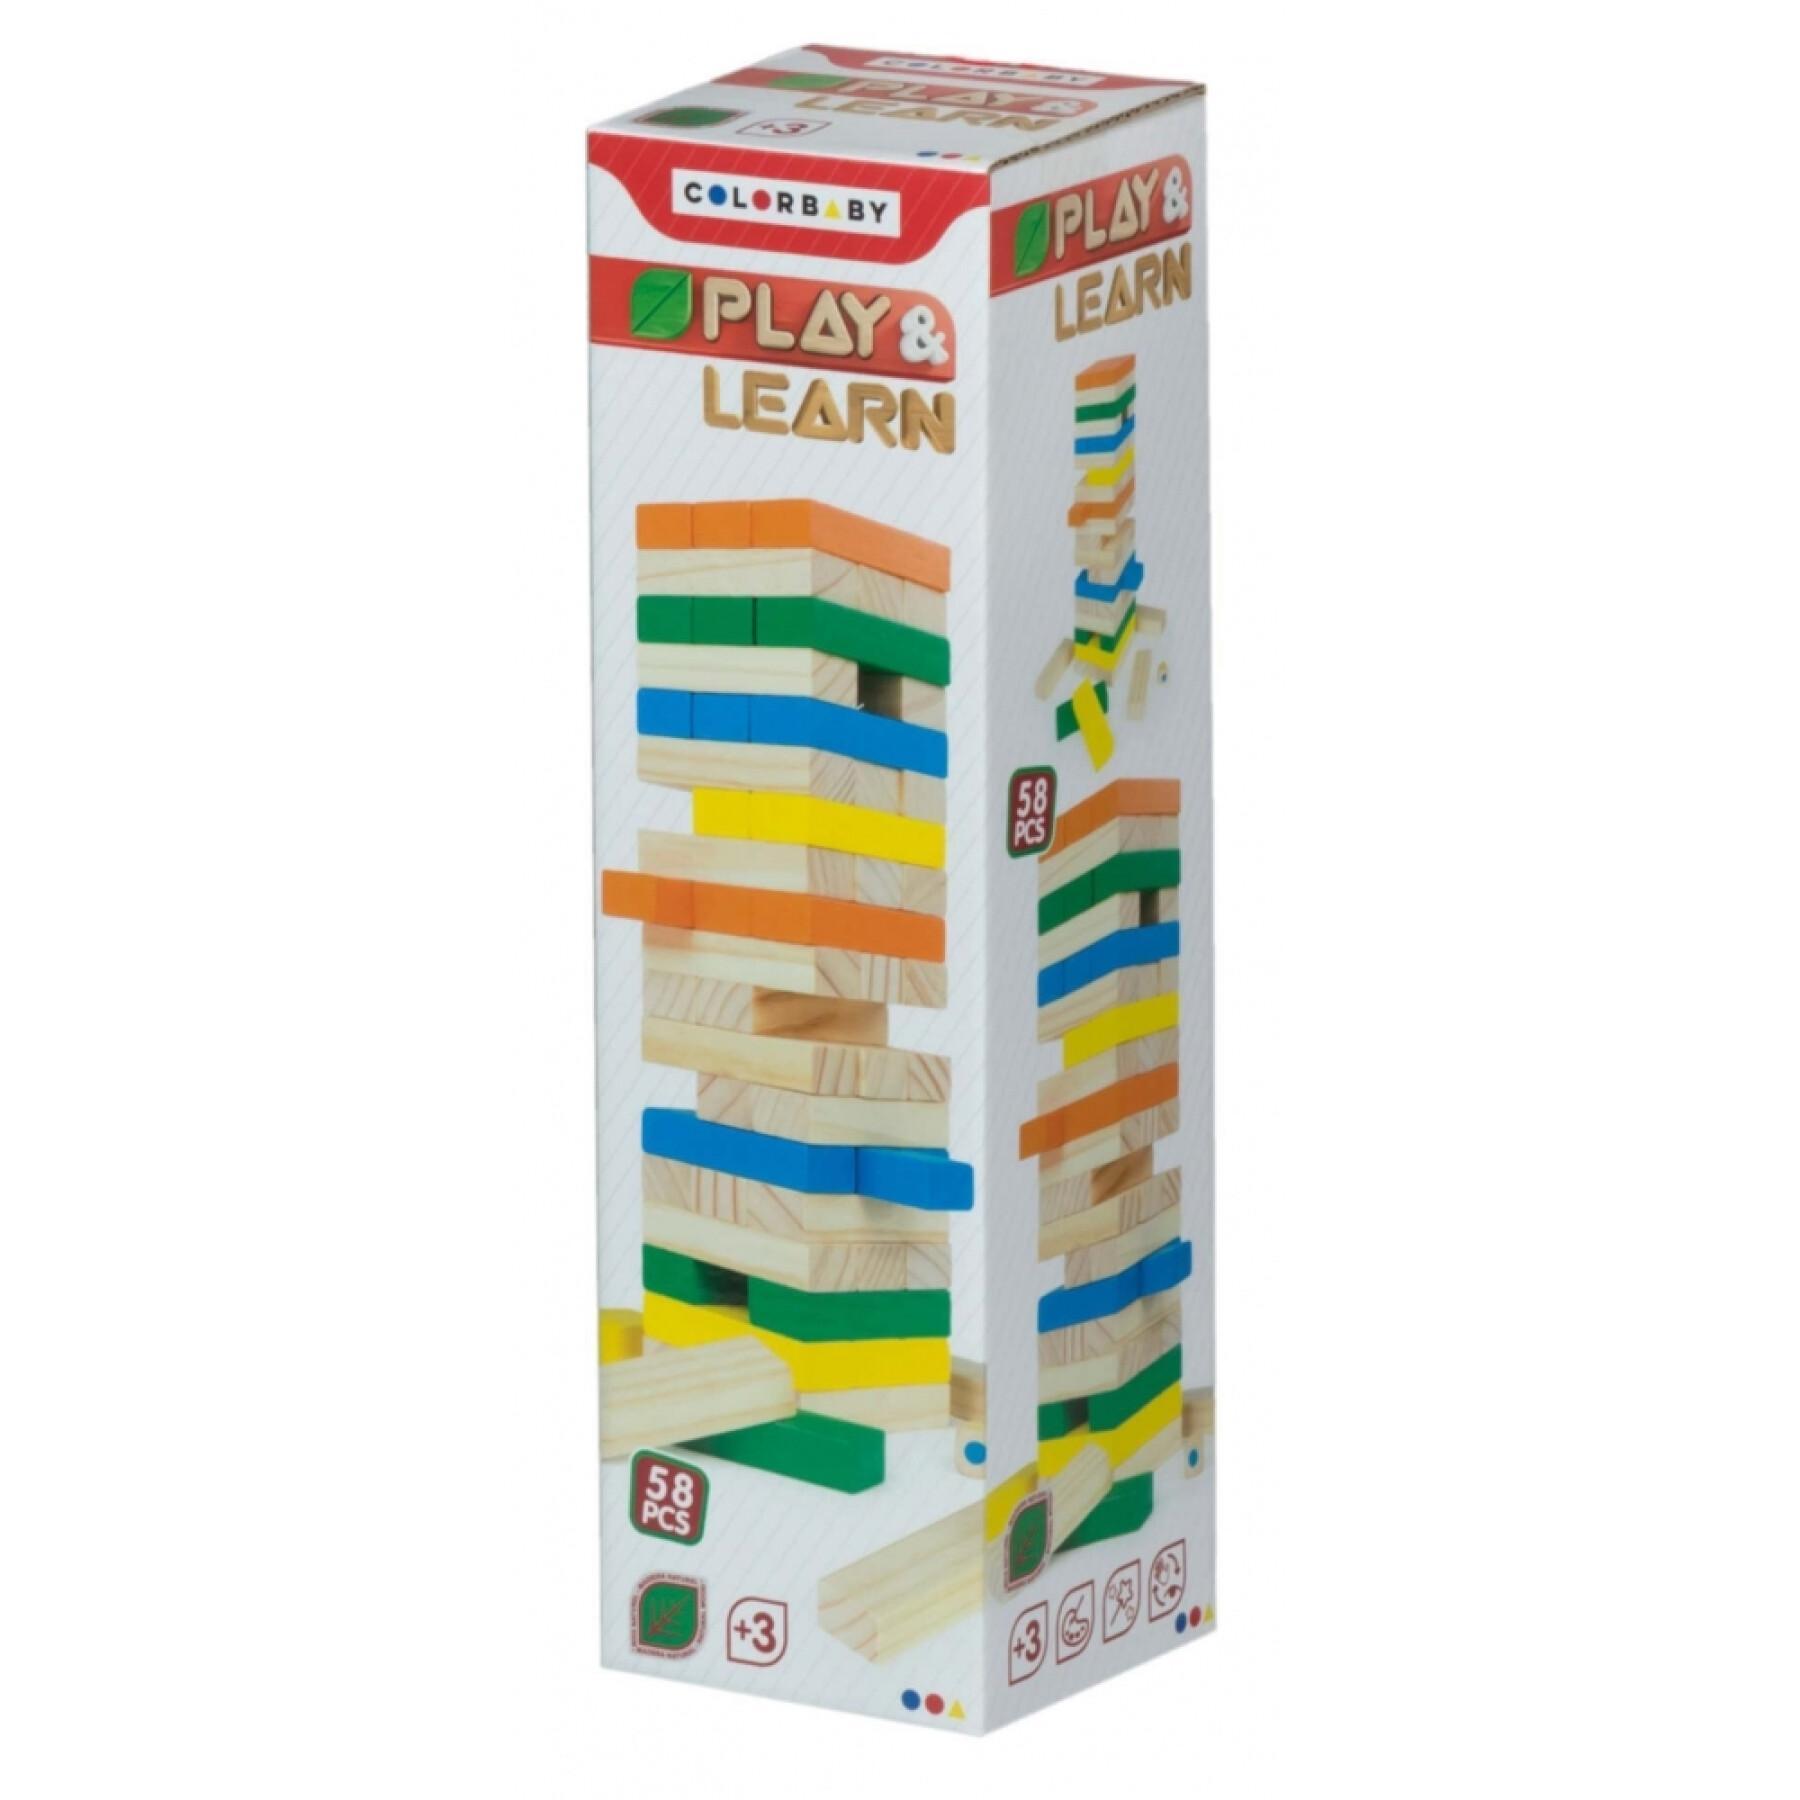 Tour de blocs en bois 58 pièces ColorBaby